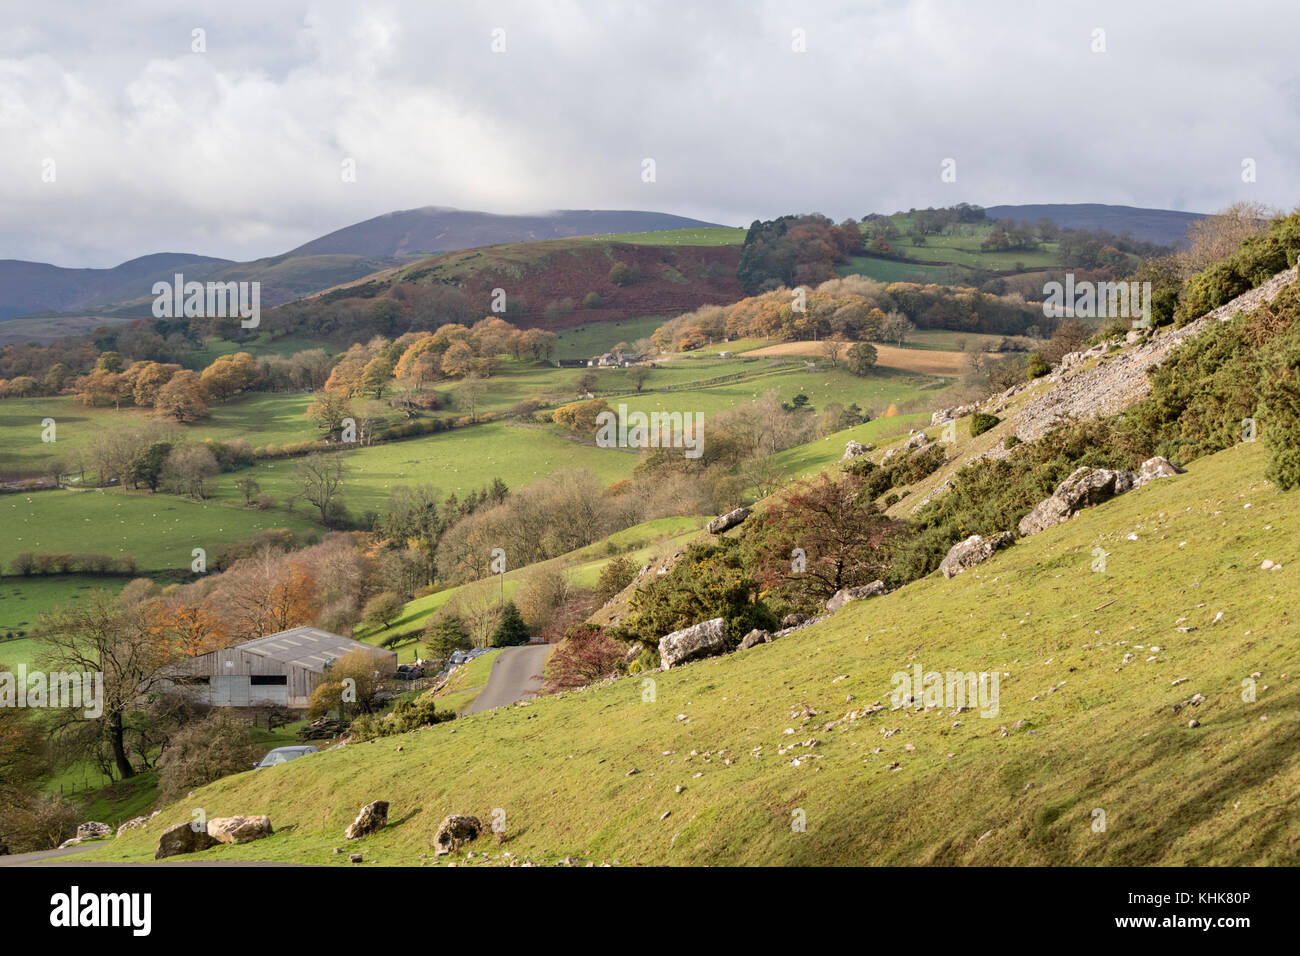 Les falaises de calcaire de Eglwyseg dans la vallée de Llangollen, Denbighshire, Nord du Pays de Galles, Royaume-Uni Banque D'Images